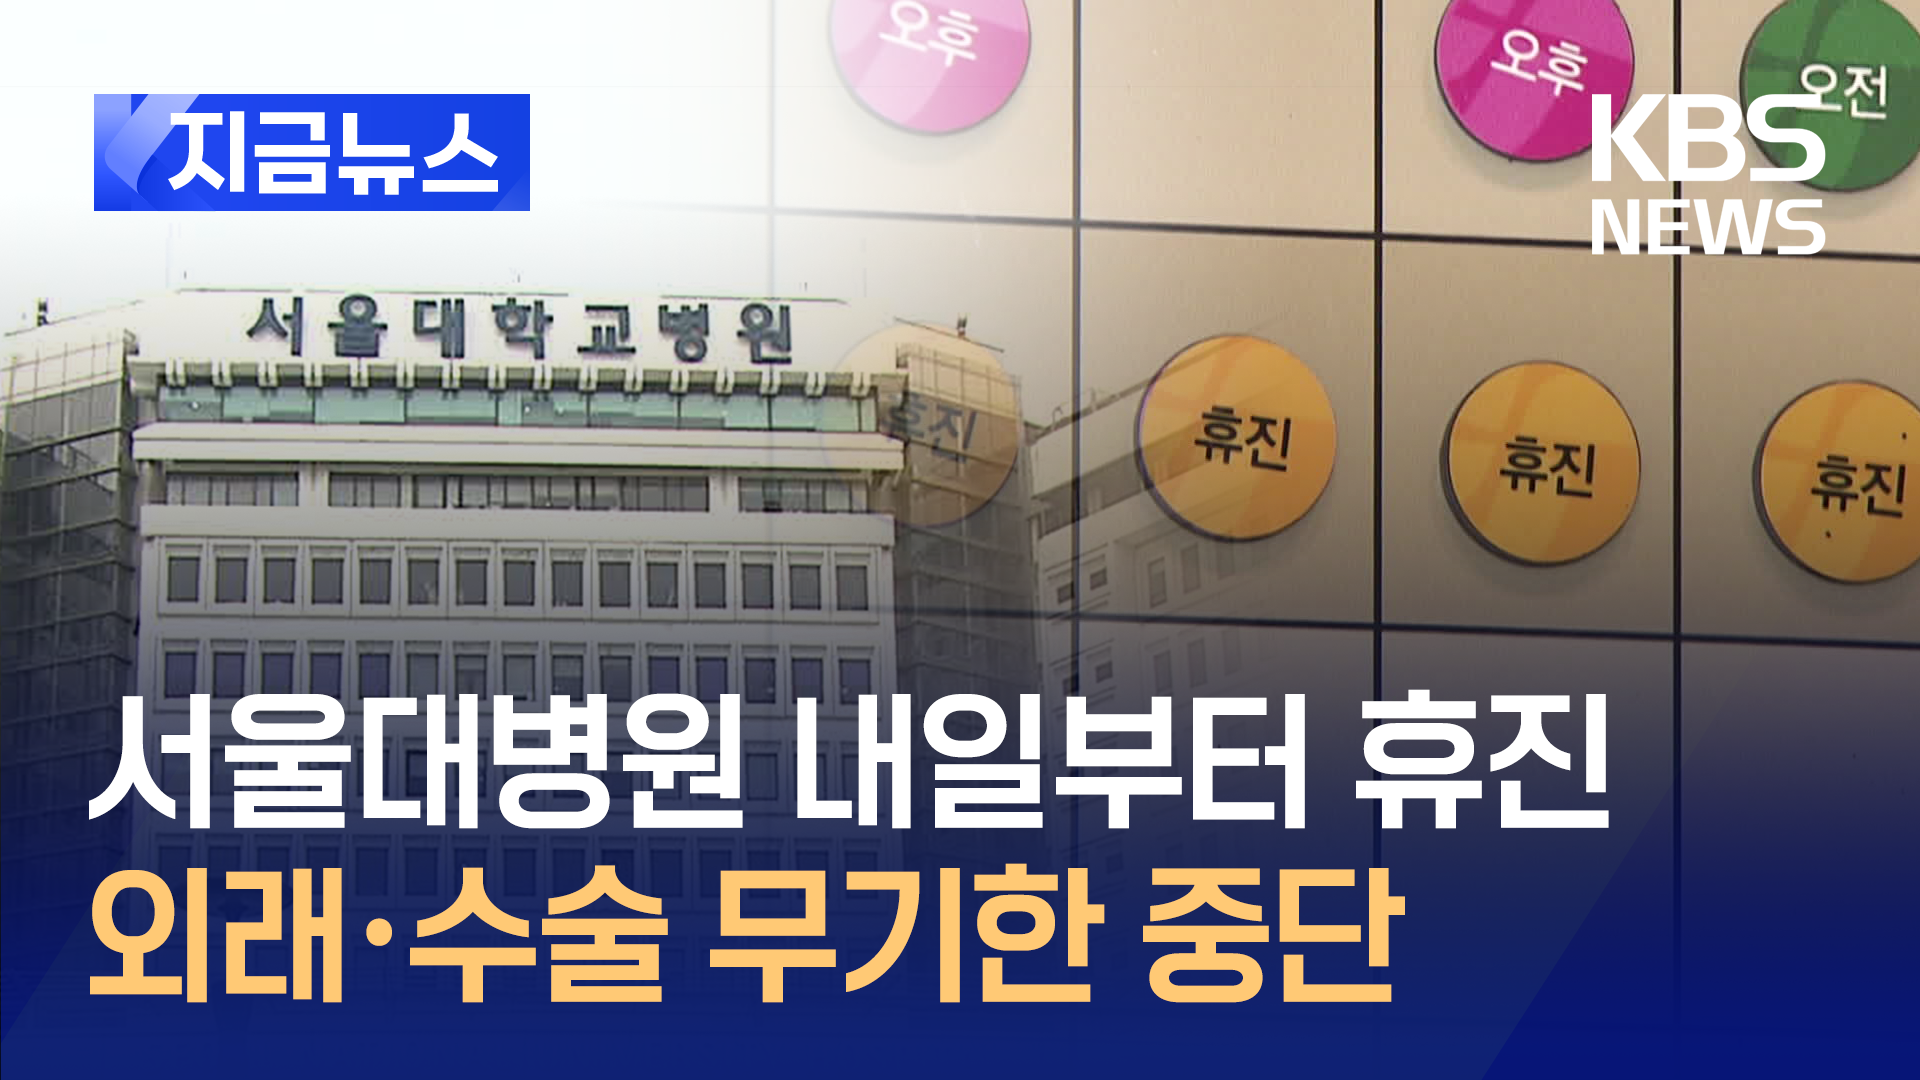  내일부터 서울대병원 무기한 휴진…의료계 휴진 본격화 [지금뉴스]